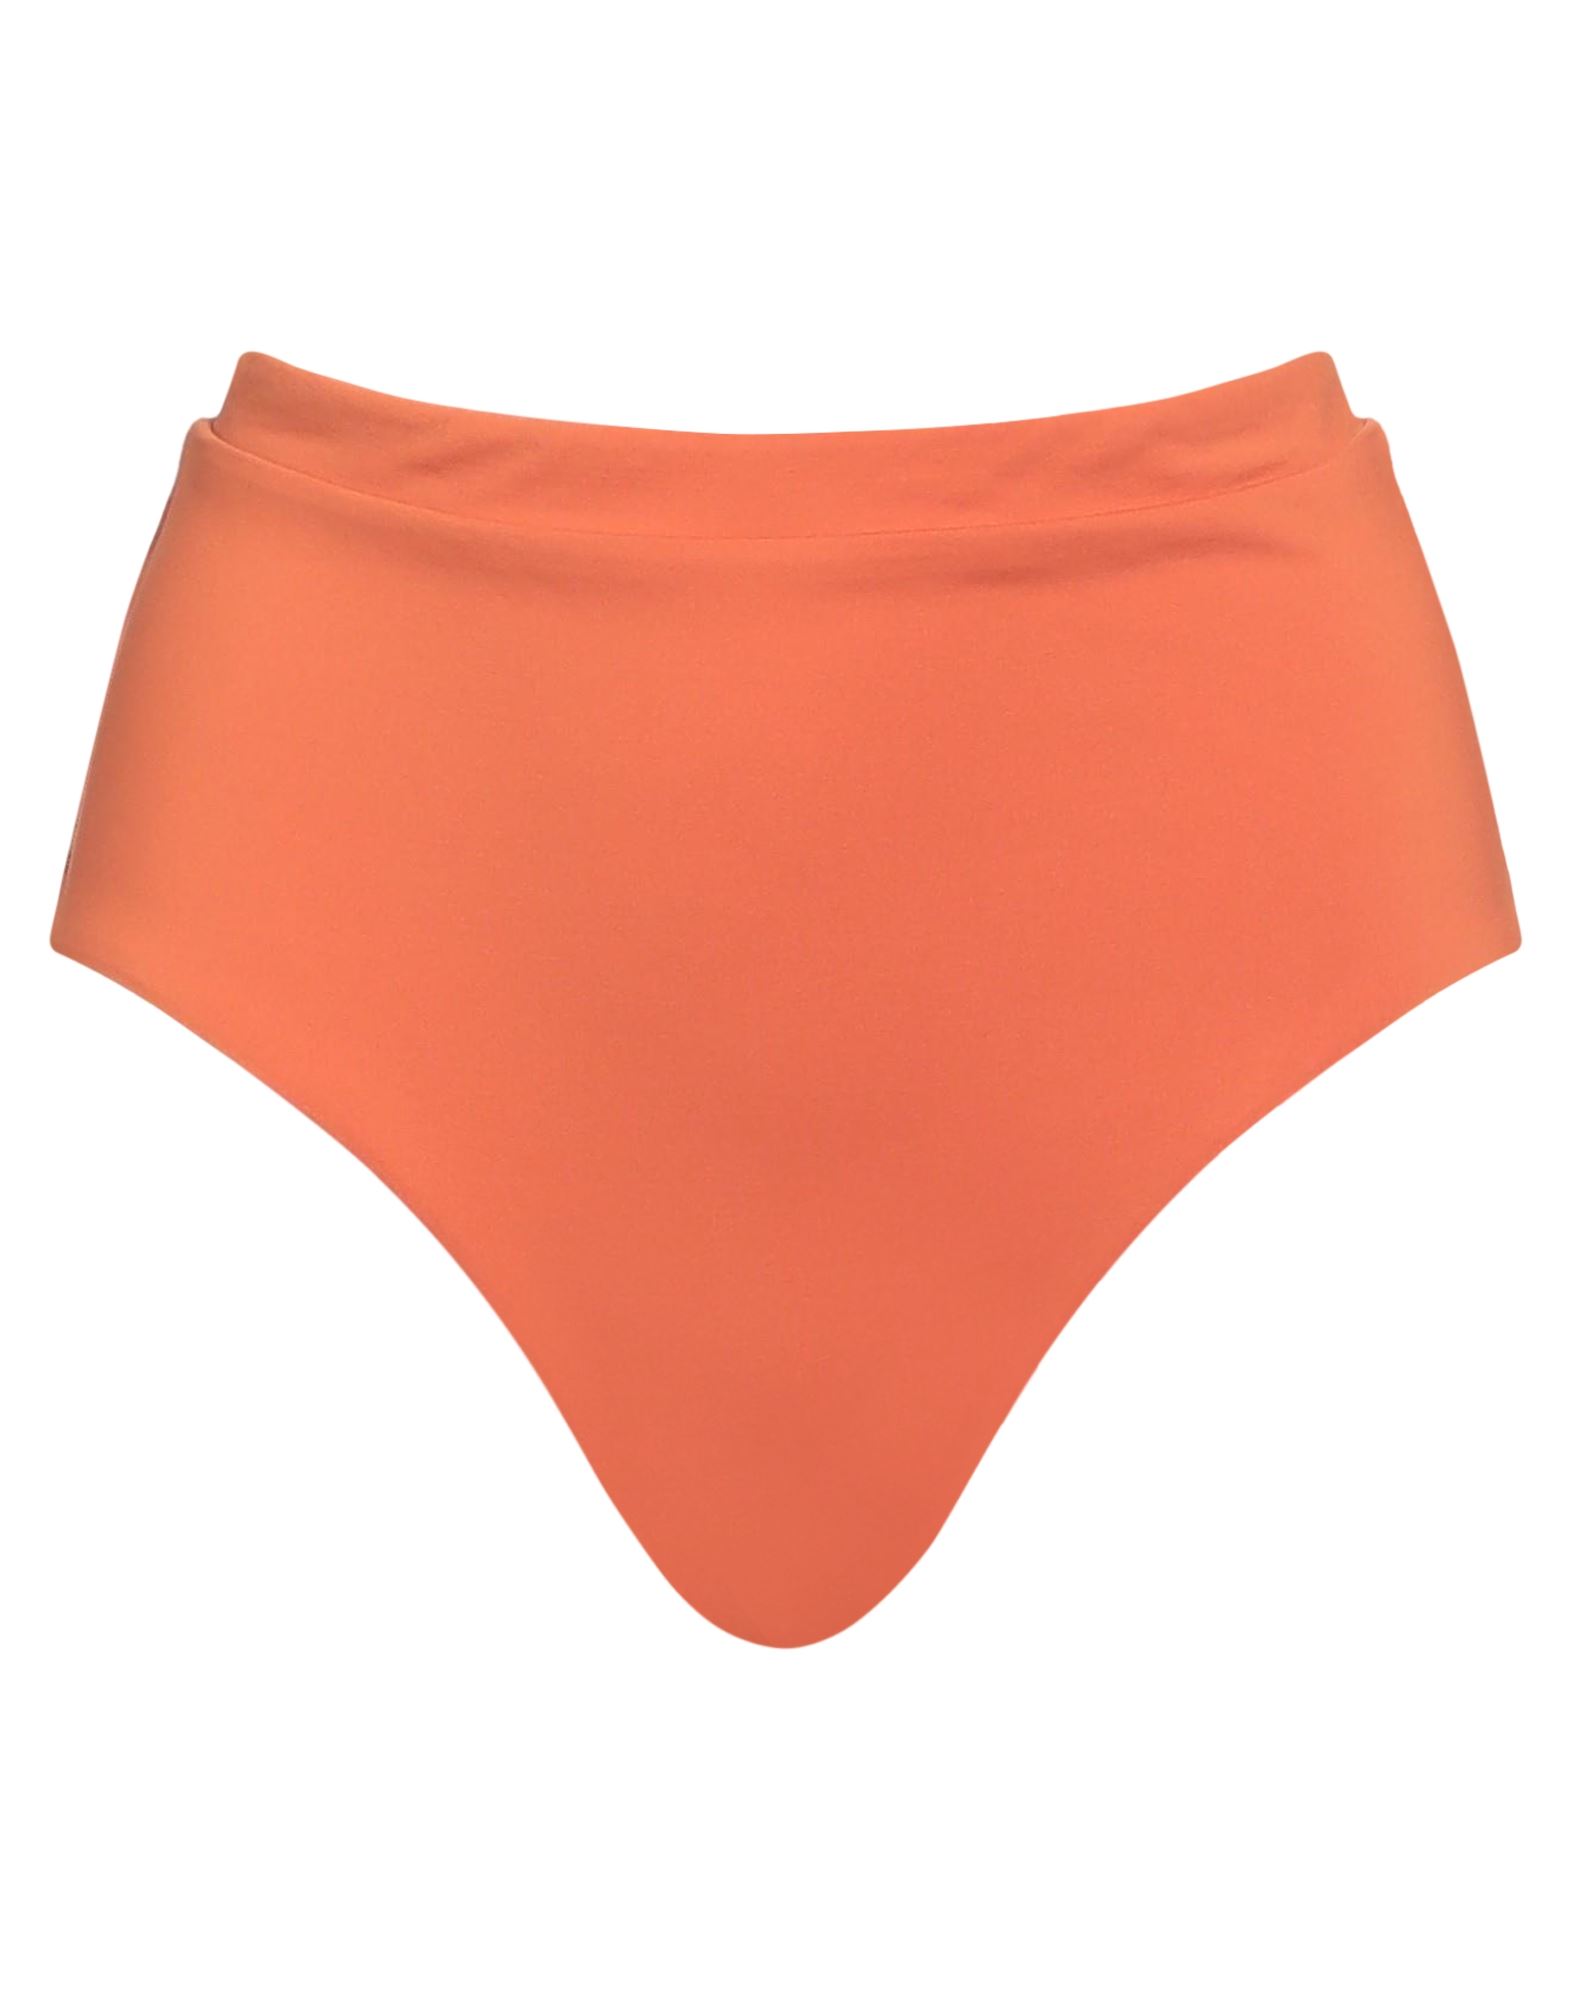 BONDI BORN Bikinislip & Badehose Damen Orange von BONDI BORN